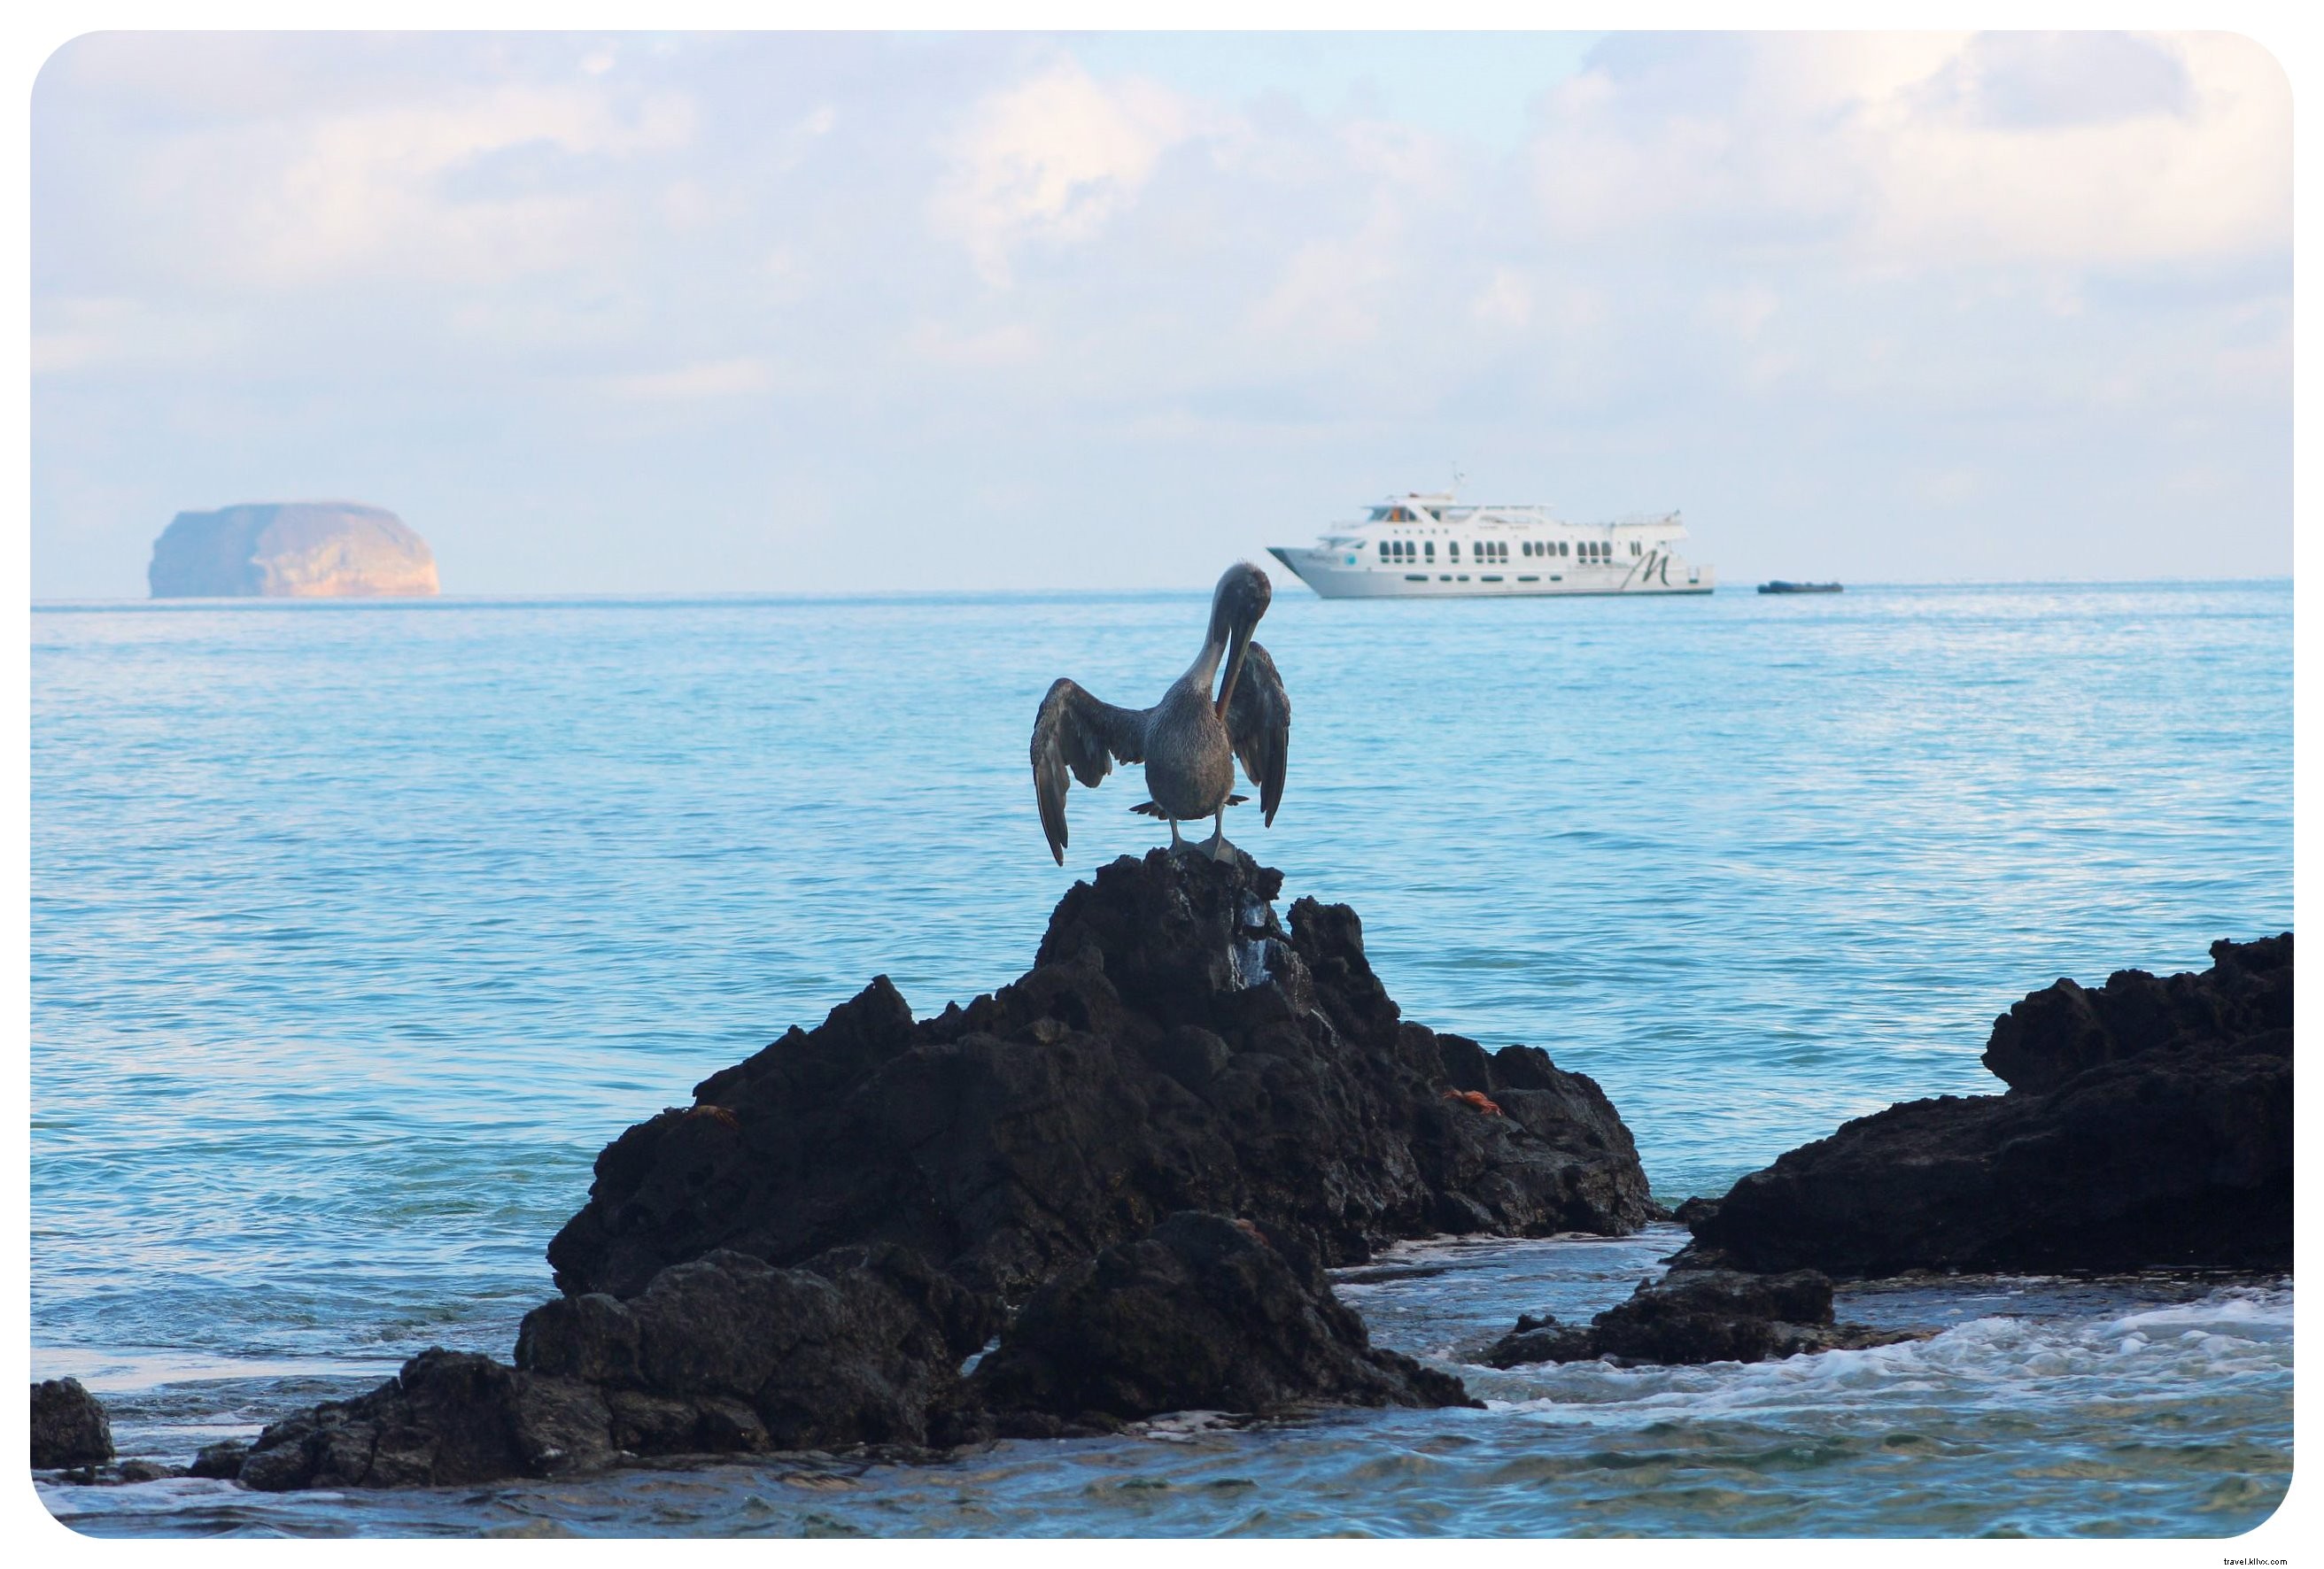 Las Islas Galápagos:quince cosas que debe saber antes de ir